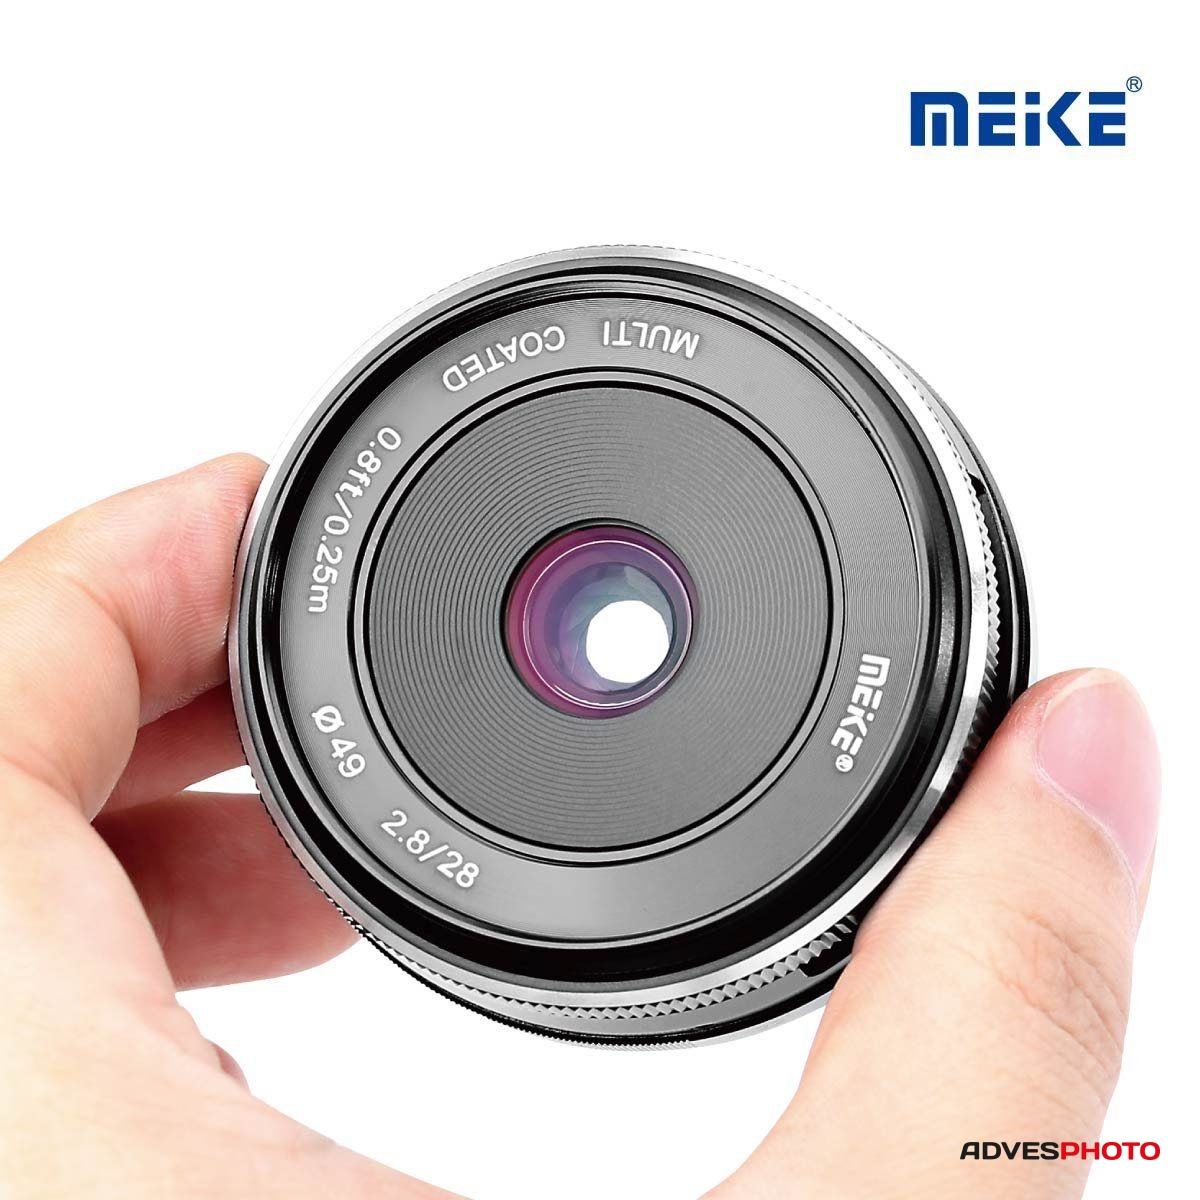 Meike 28mm f / 2.8 fix objektív Fujifilm tükör nélküli fényképezőgéphez